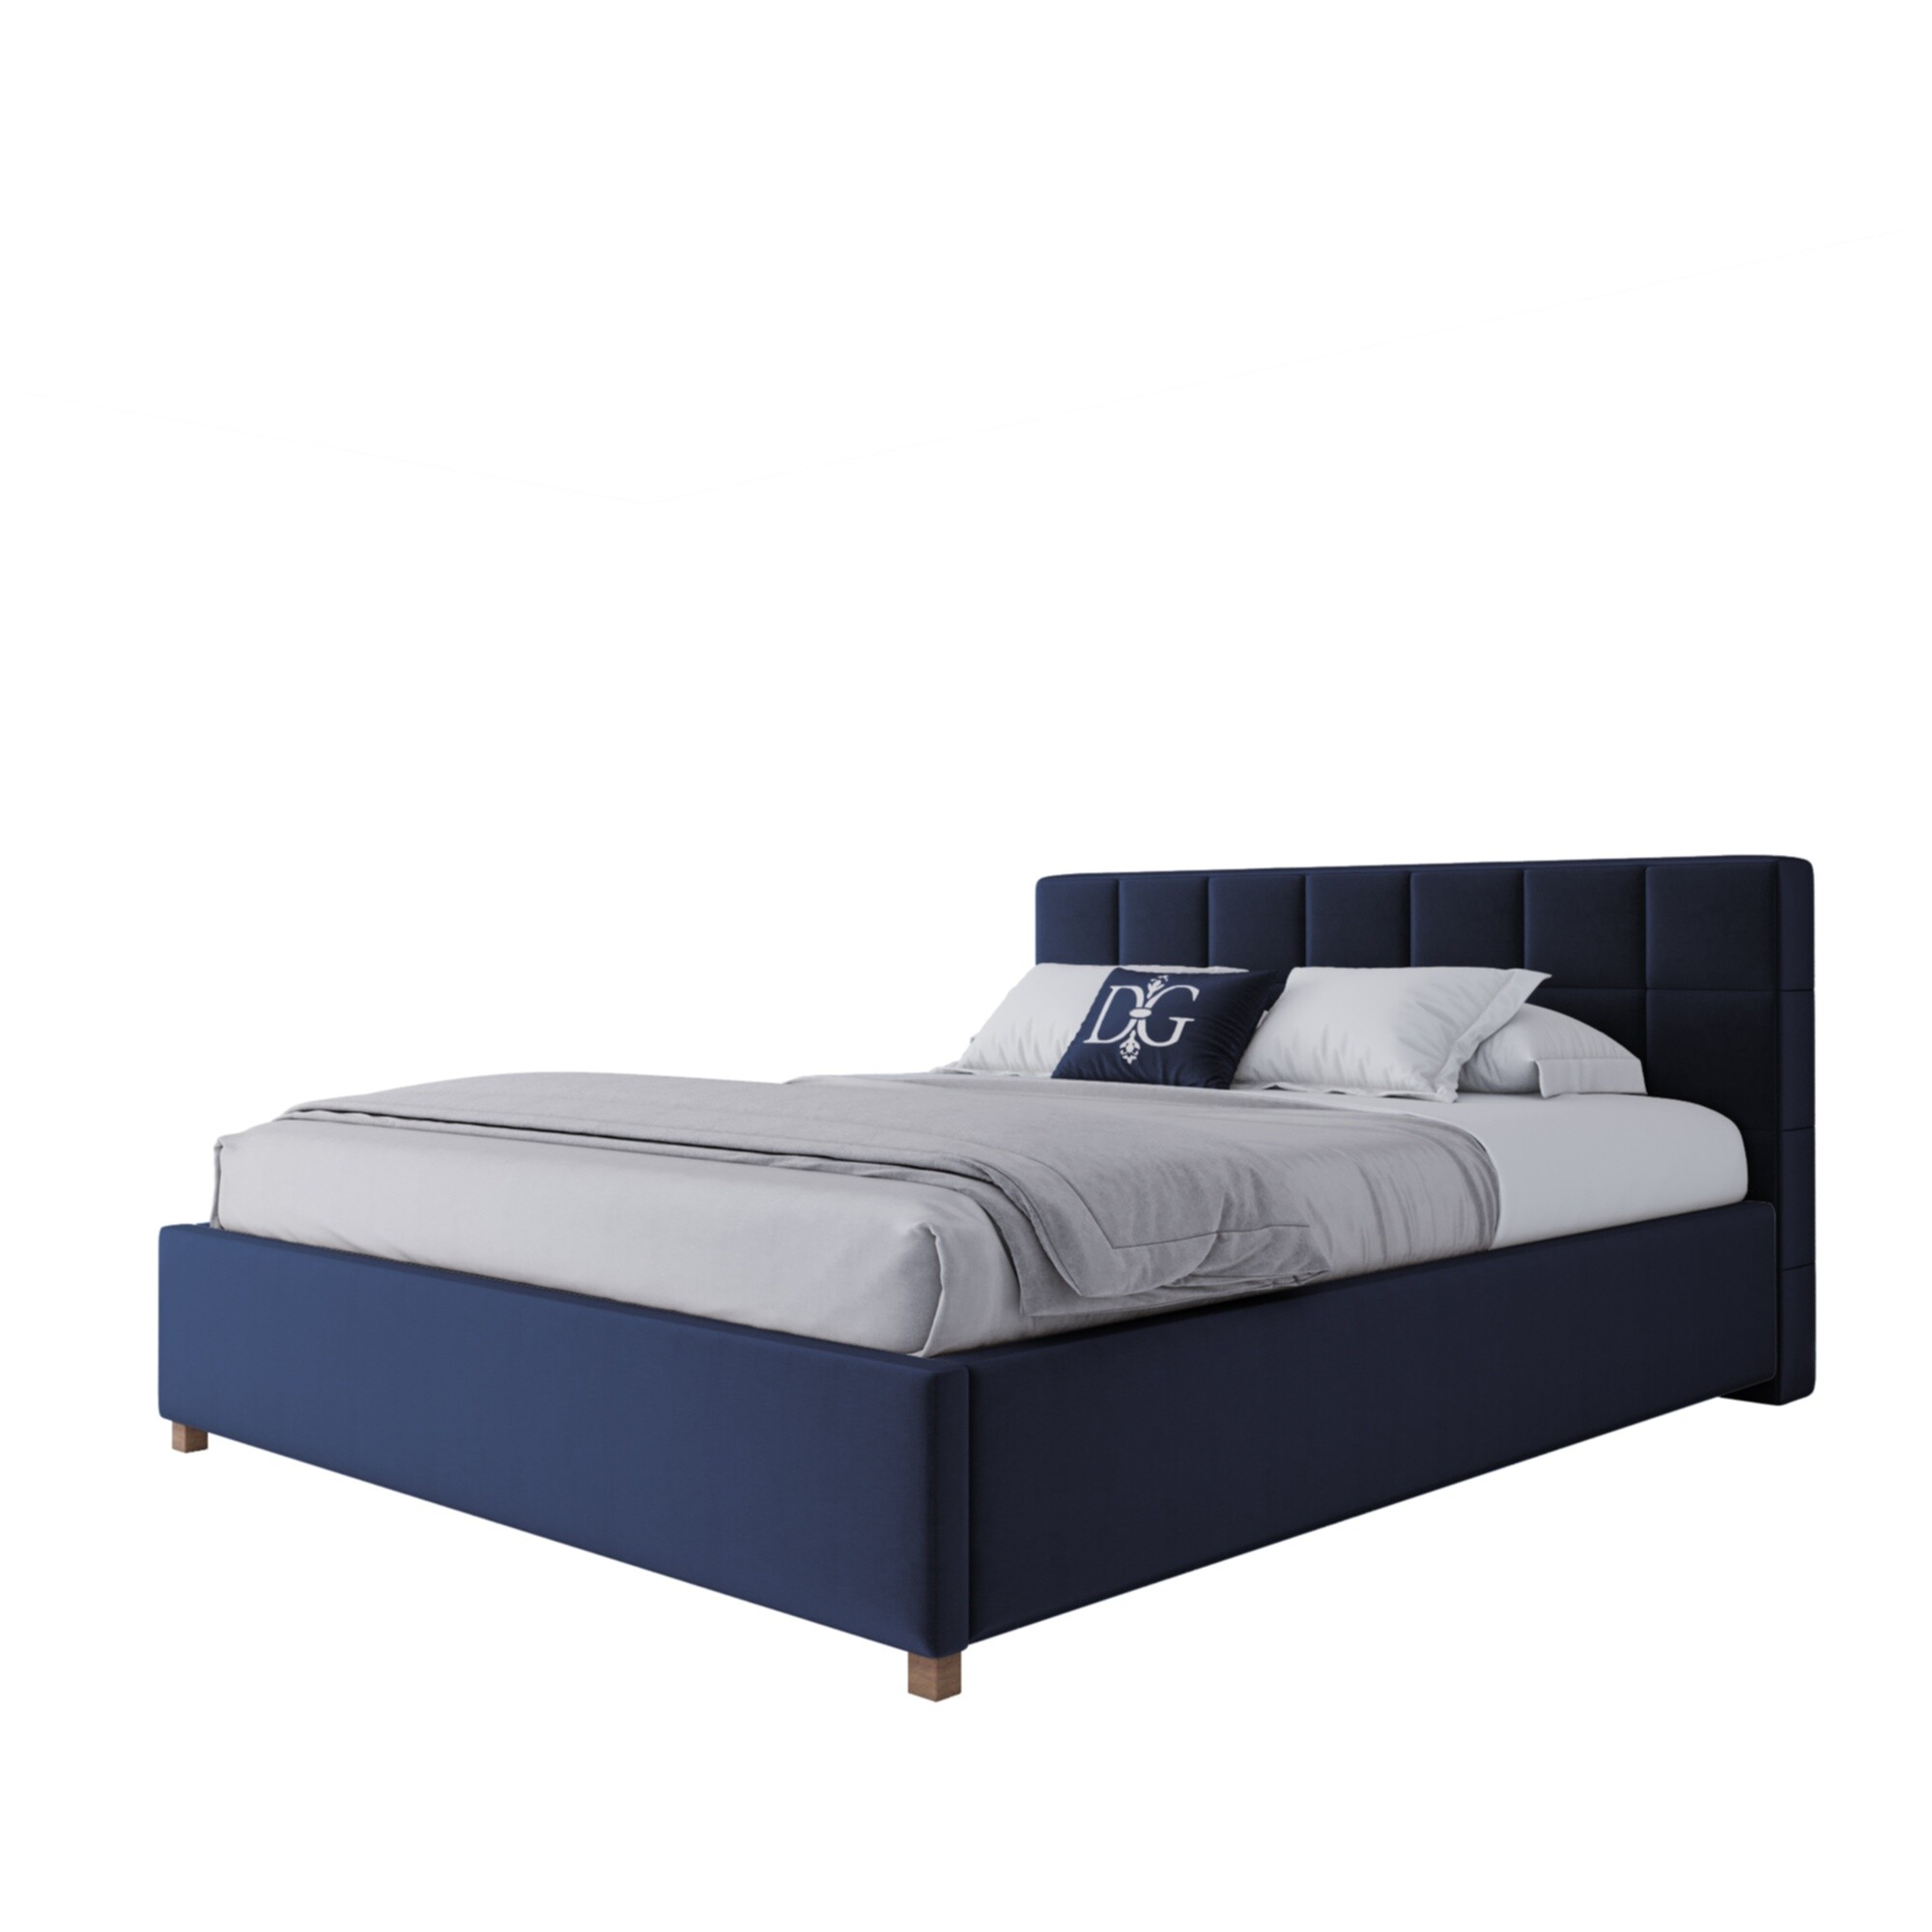 Кровать двуспальная 160х200 синяя Wales